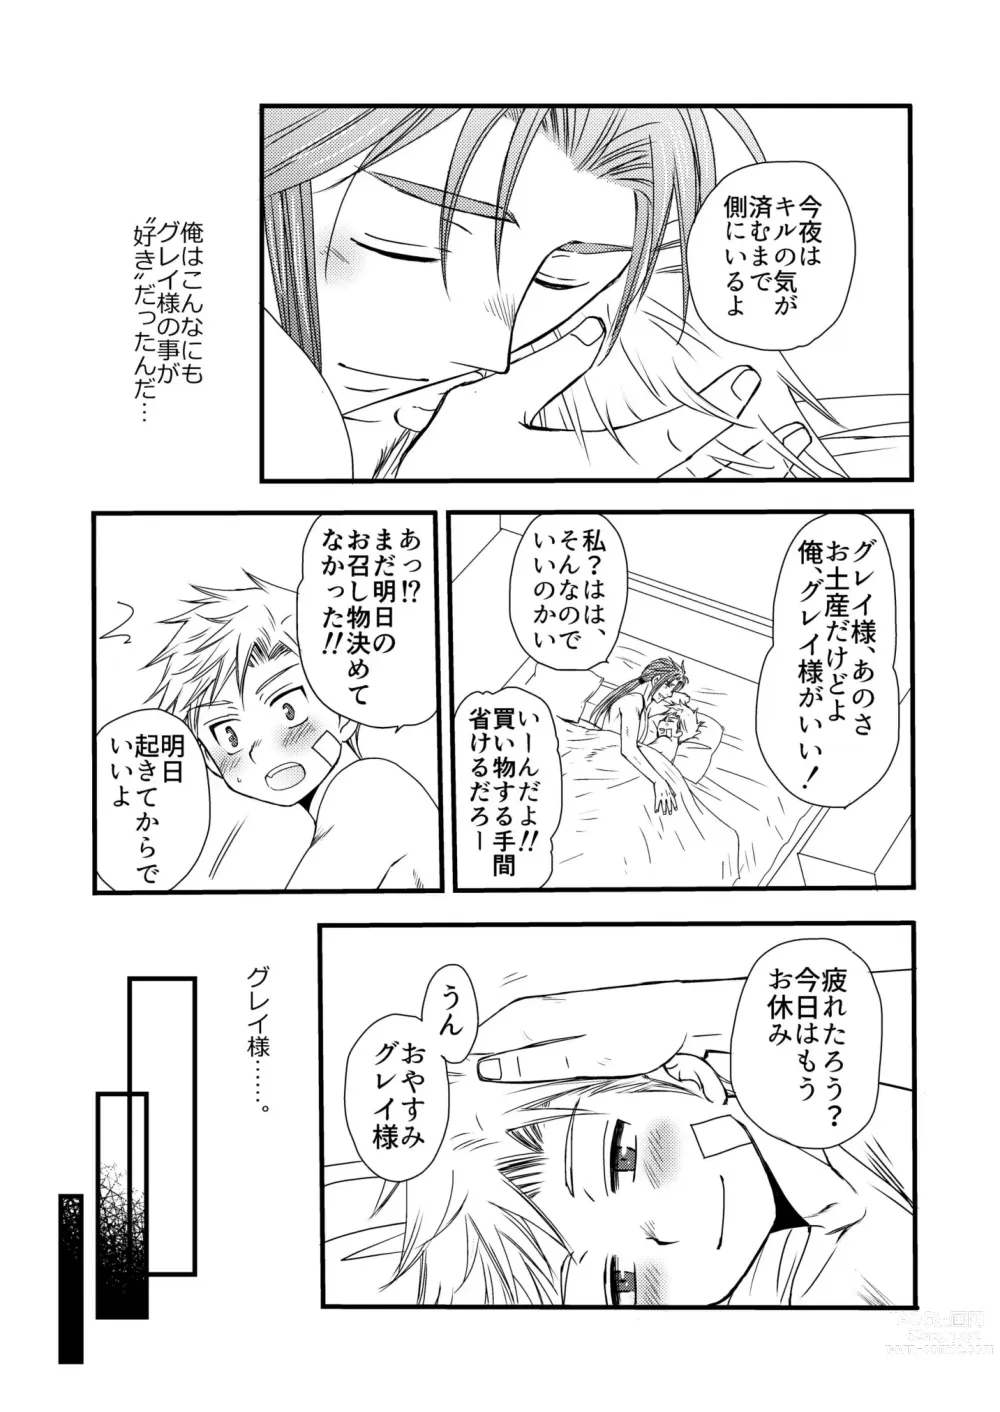 Page 55 of doujinshi Ikoku no Ryourinin